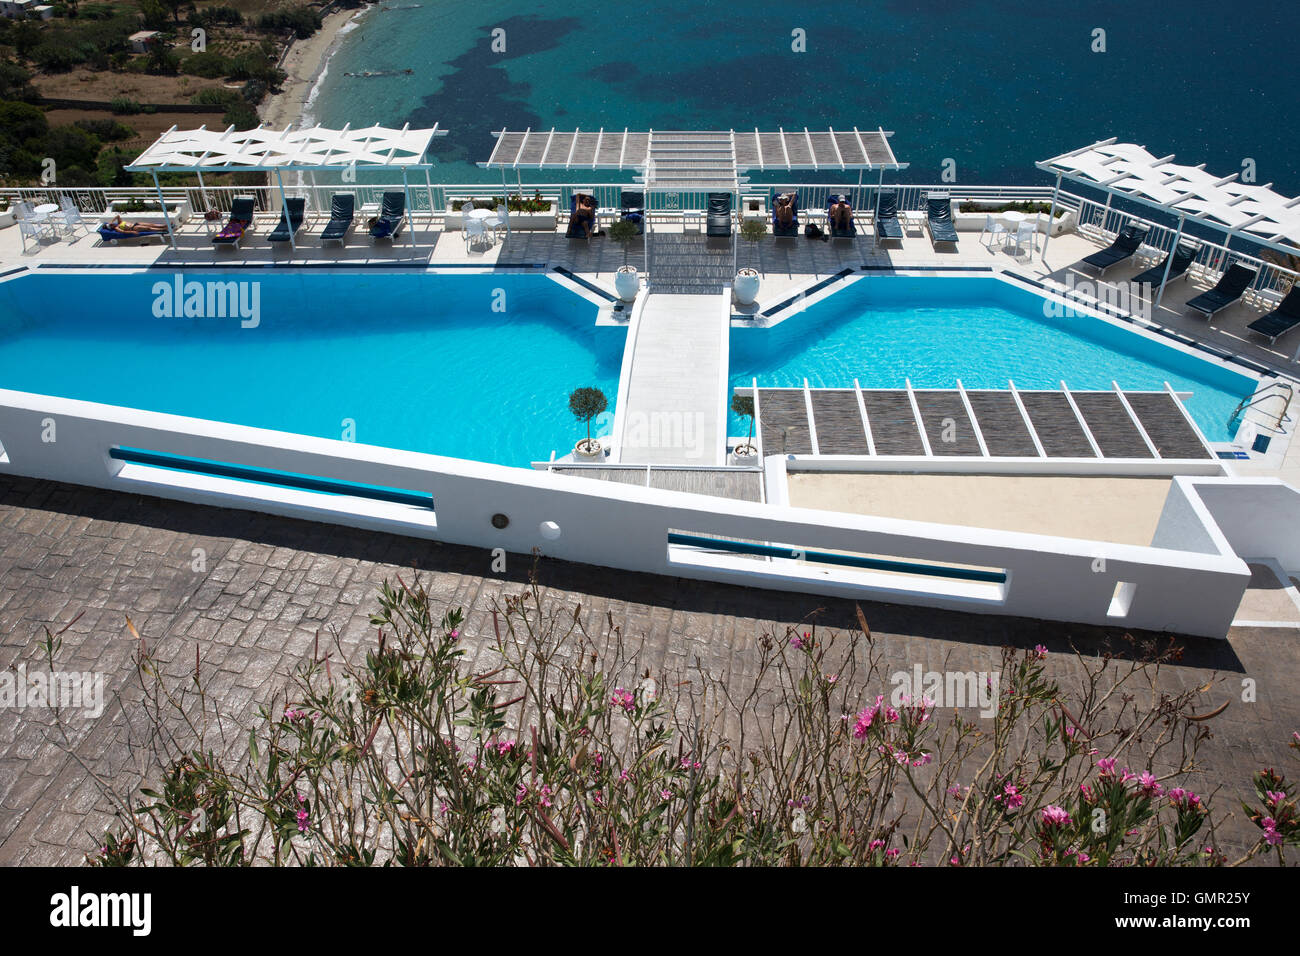 Einen leeren Pool in einem Hotel in Griechenland zeigen den Abschwung in der Tourismusbranche Stockfoto